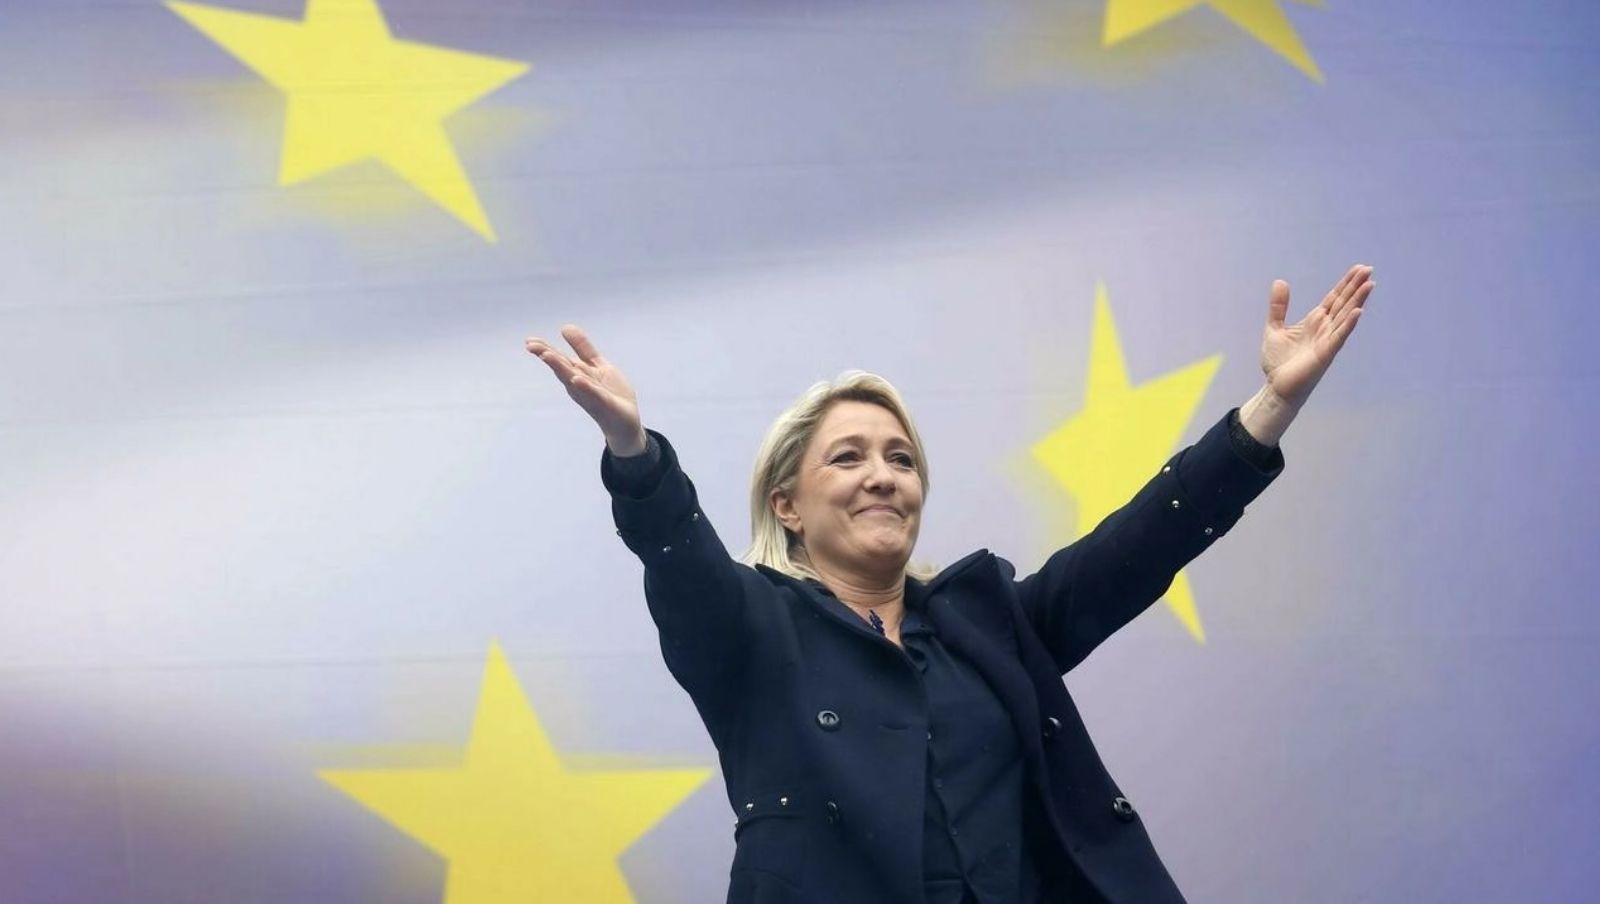 Марин Ле Пен имеет больше шансов победить на президентских выборах во Франции